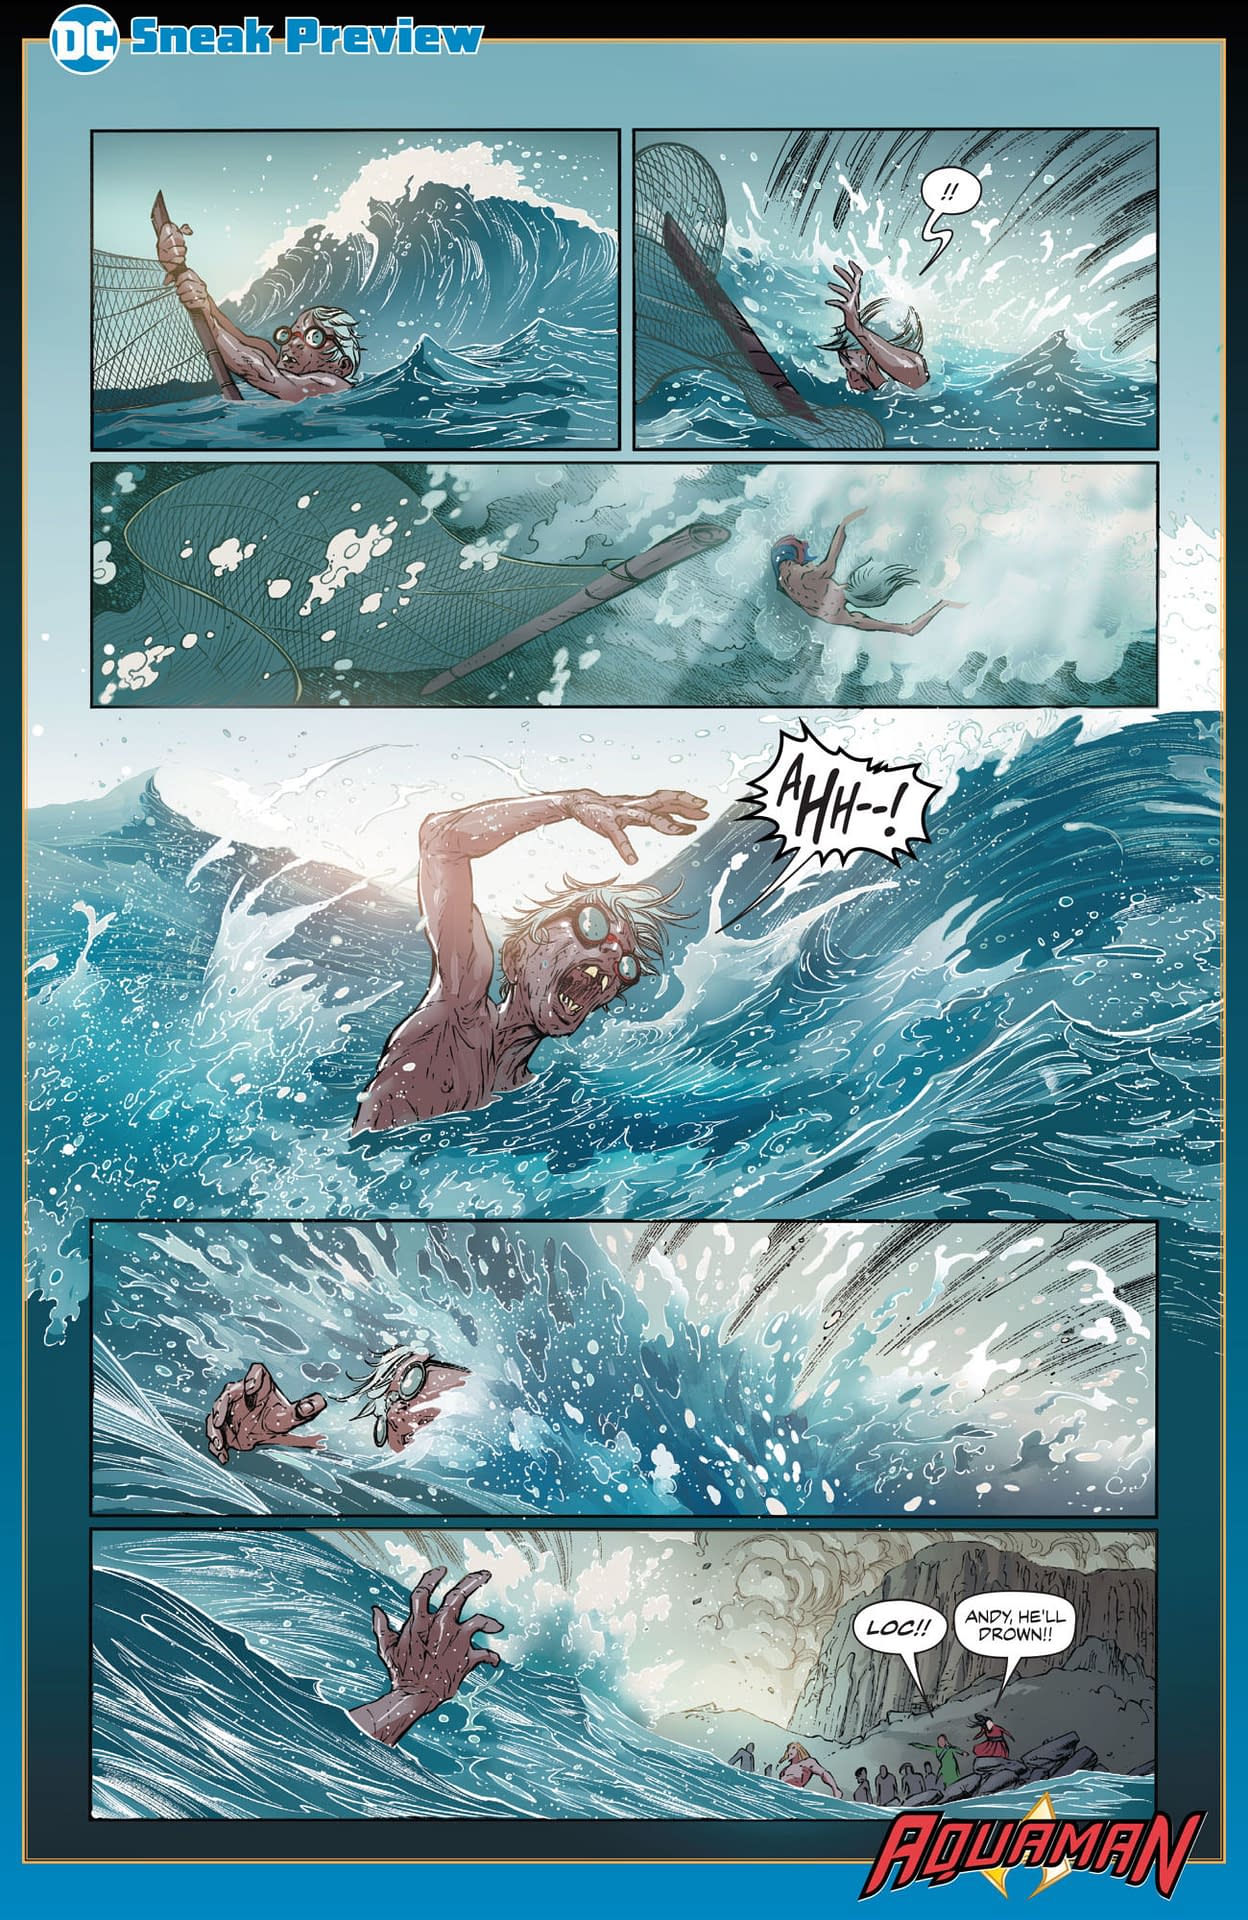 A New Origin for Aquaman in DeConnick and Rocha's Aquaman #43?